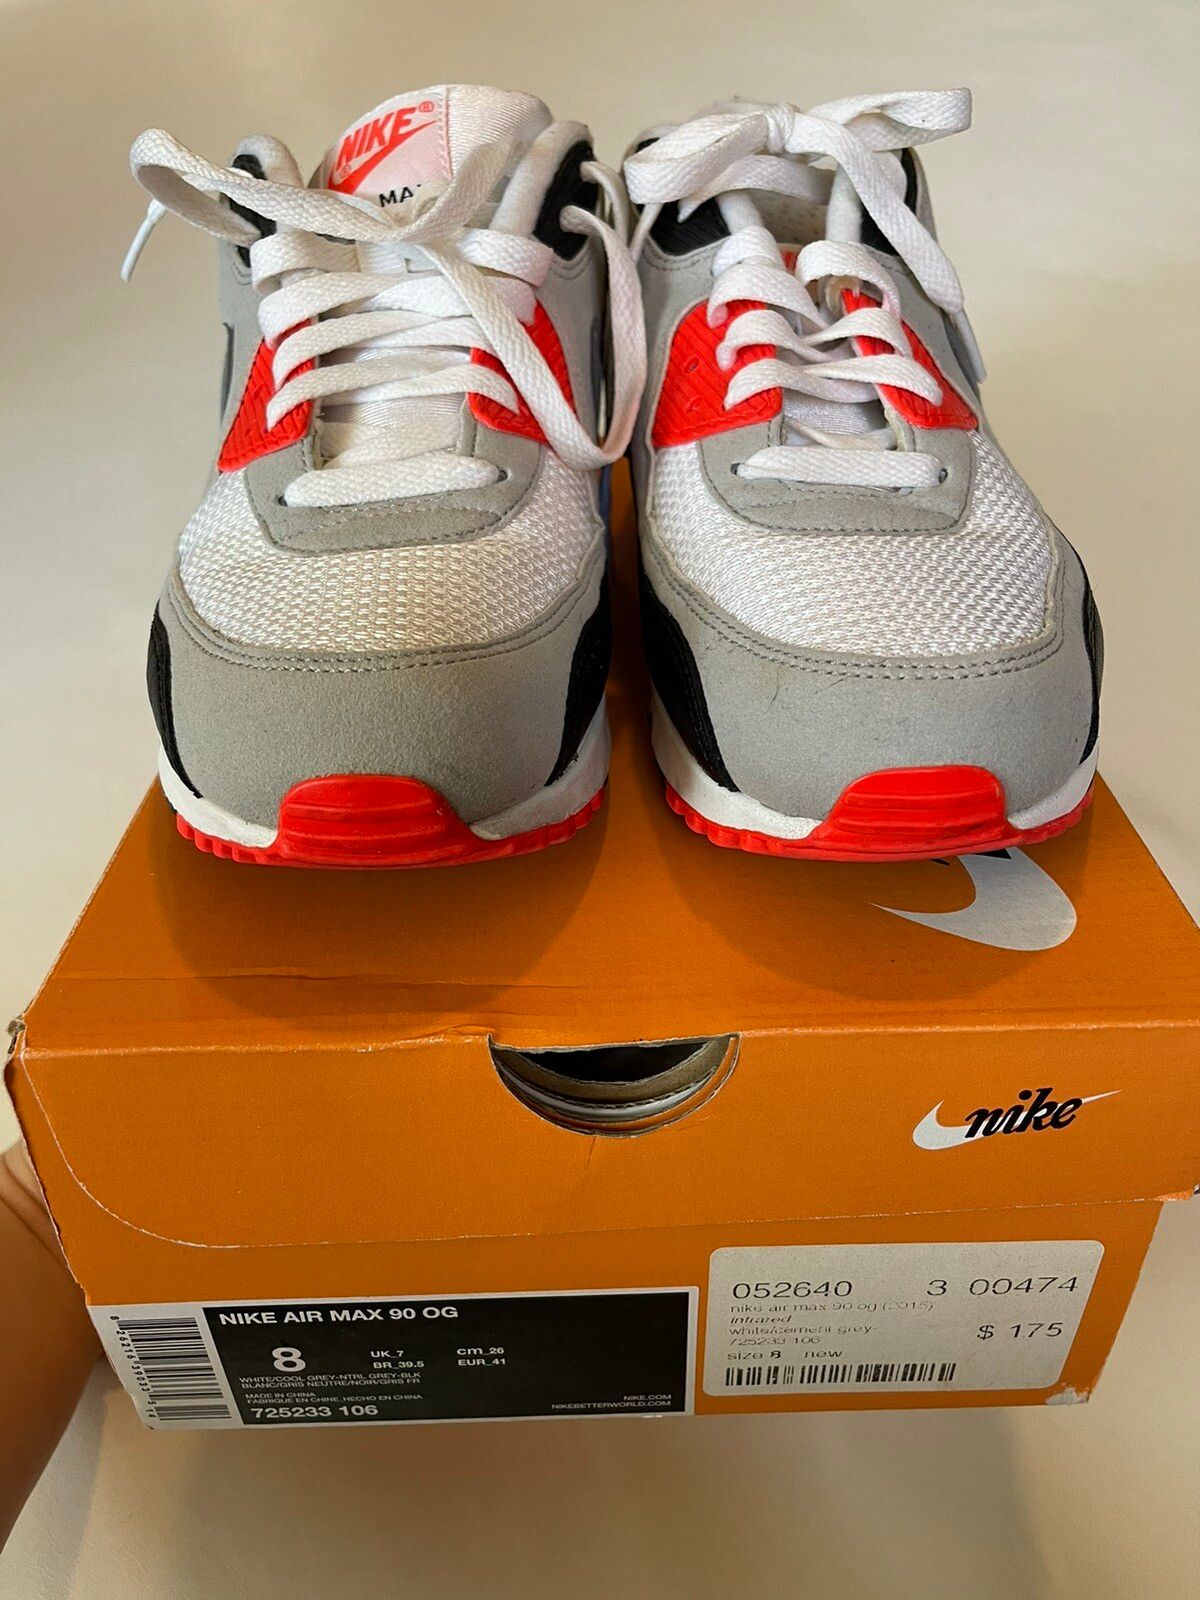 Nike Air Max 90 OG Size 8.5 Infrared White Black 725233 106 Dunk 2015  Supreme